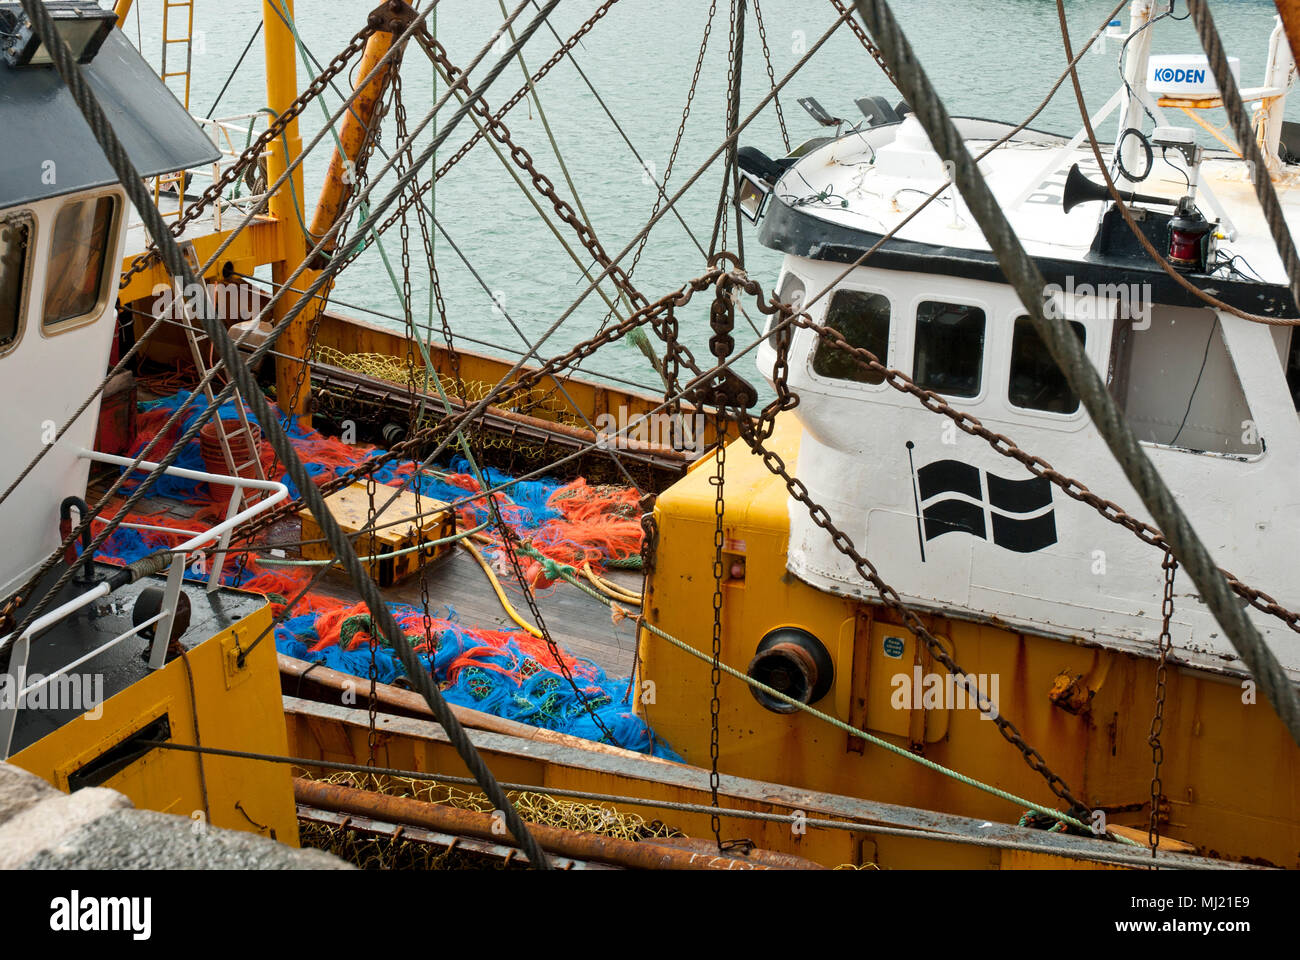 Ein Strahl trawler Fischereifahrzeug, das die Flagge von Cornwall St. Piran, sowie bunte Netze. In Newlyn günstig Hafen der UKs größte Fischereiflotte. Stockfoto